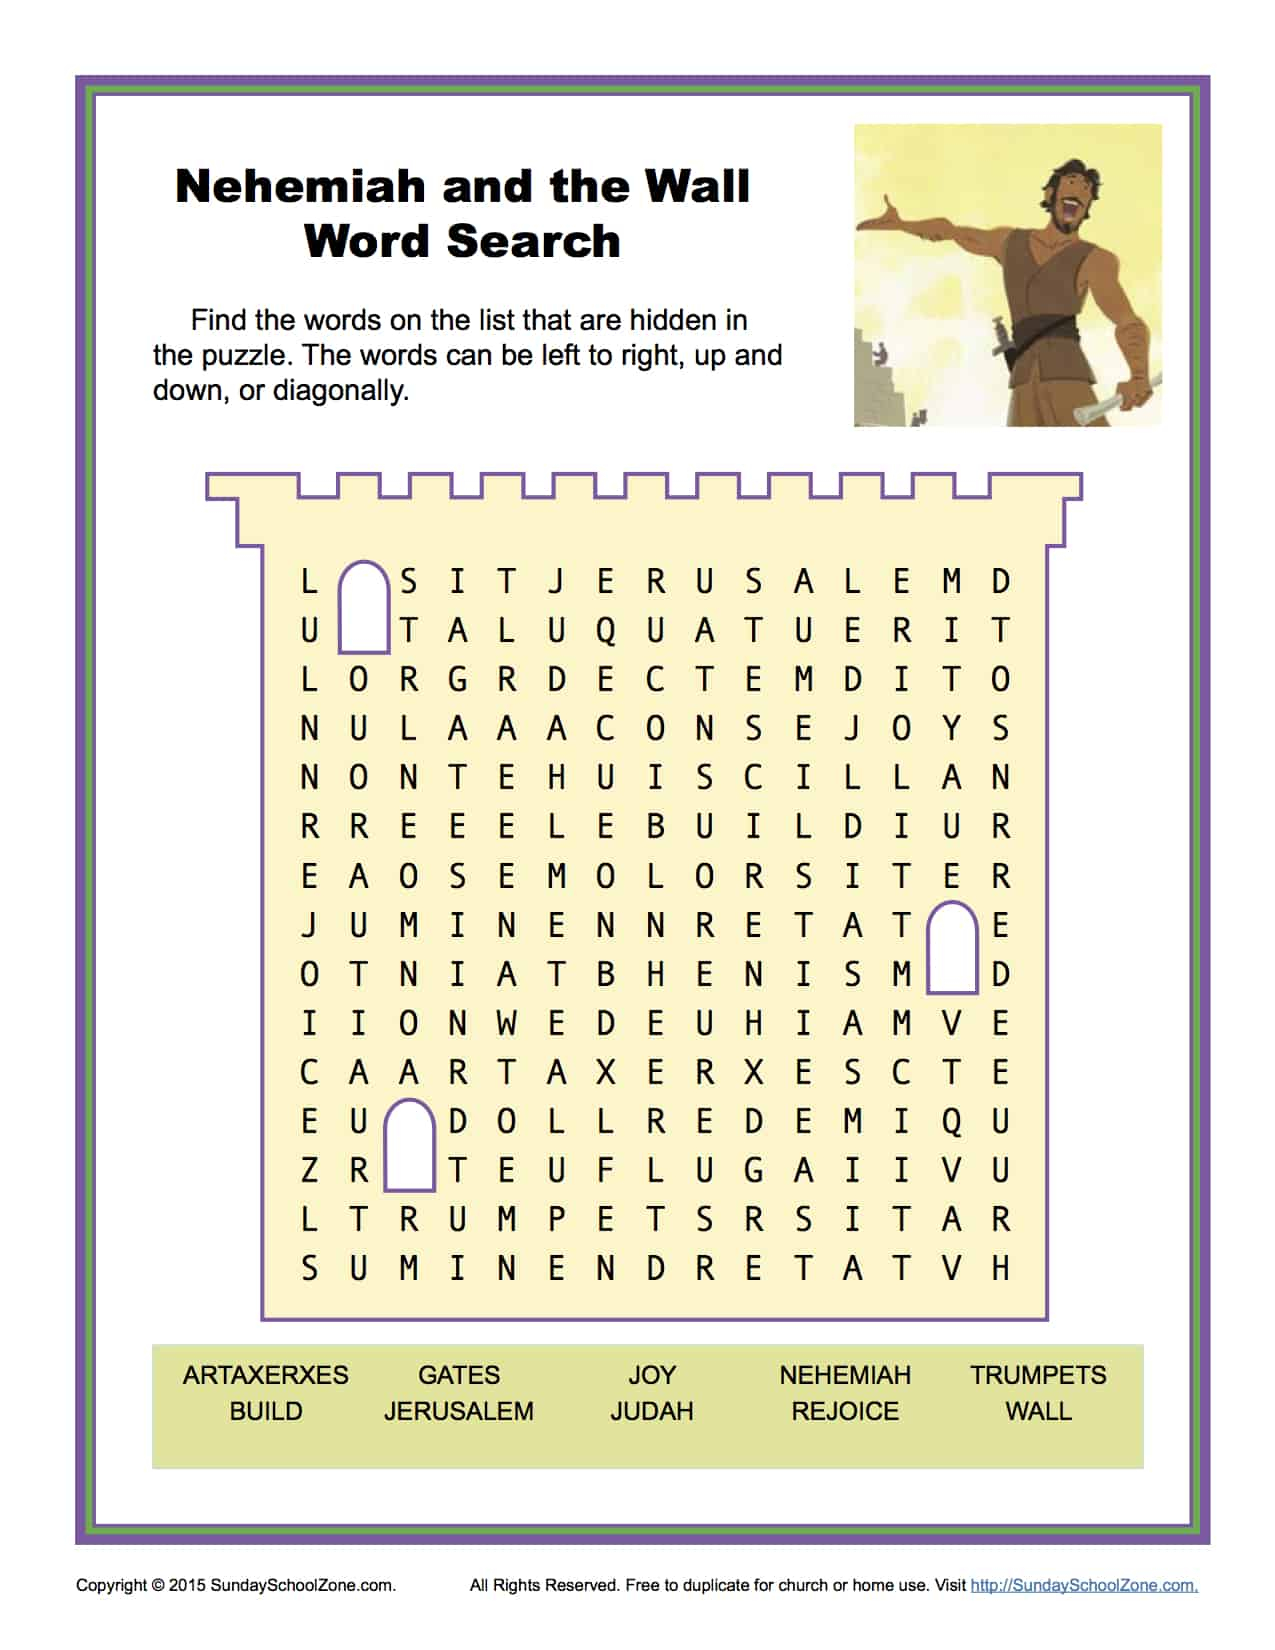 Free Printable Crossword Puzzle #6